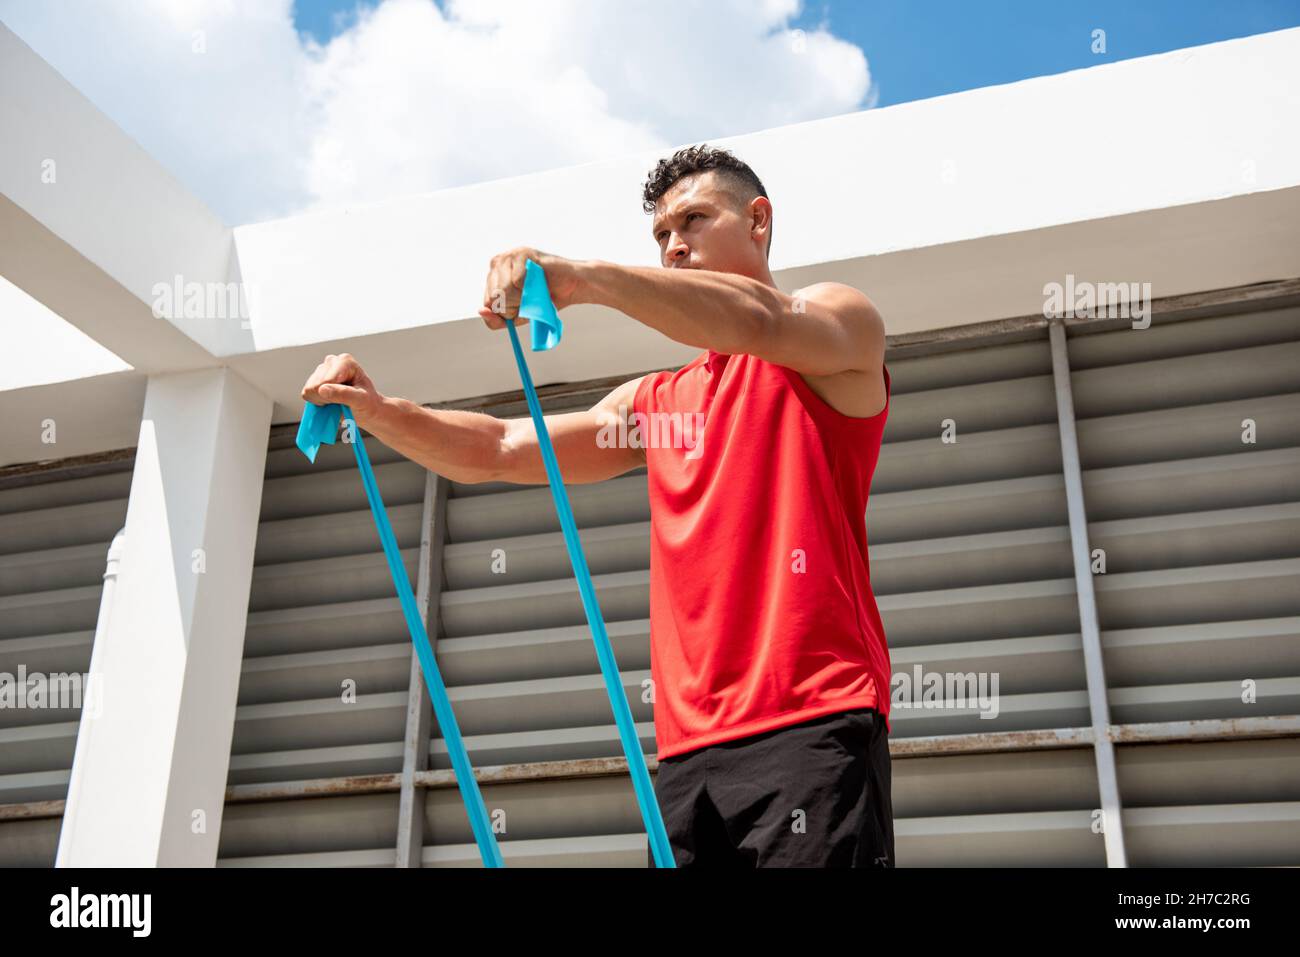 Ritratto di fit muscolare uomo sportivo facendo esercizio spalla anteriore con fascia di resistenza sul tetto della costruzione Foto Stock